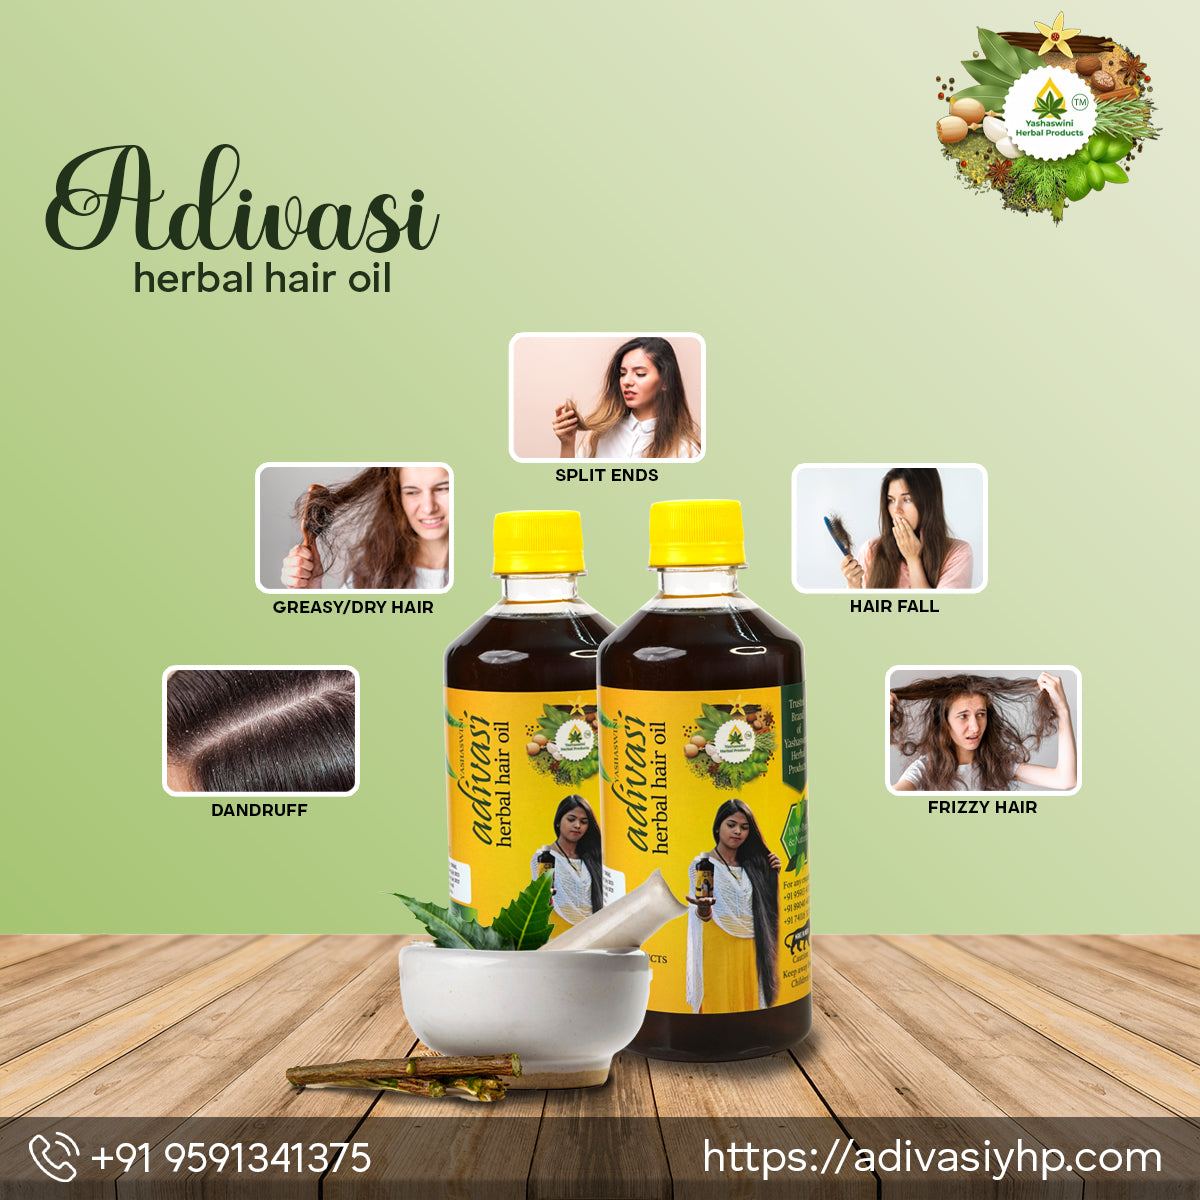 India's No. 1 Yashaswini Orignal Adivasi Herbal Hair Oil